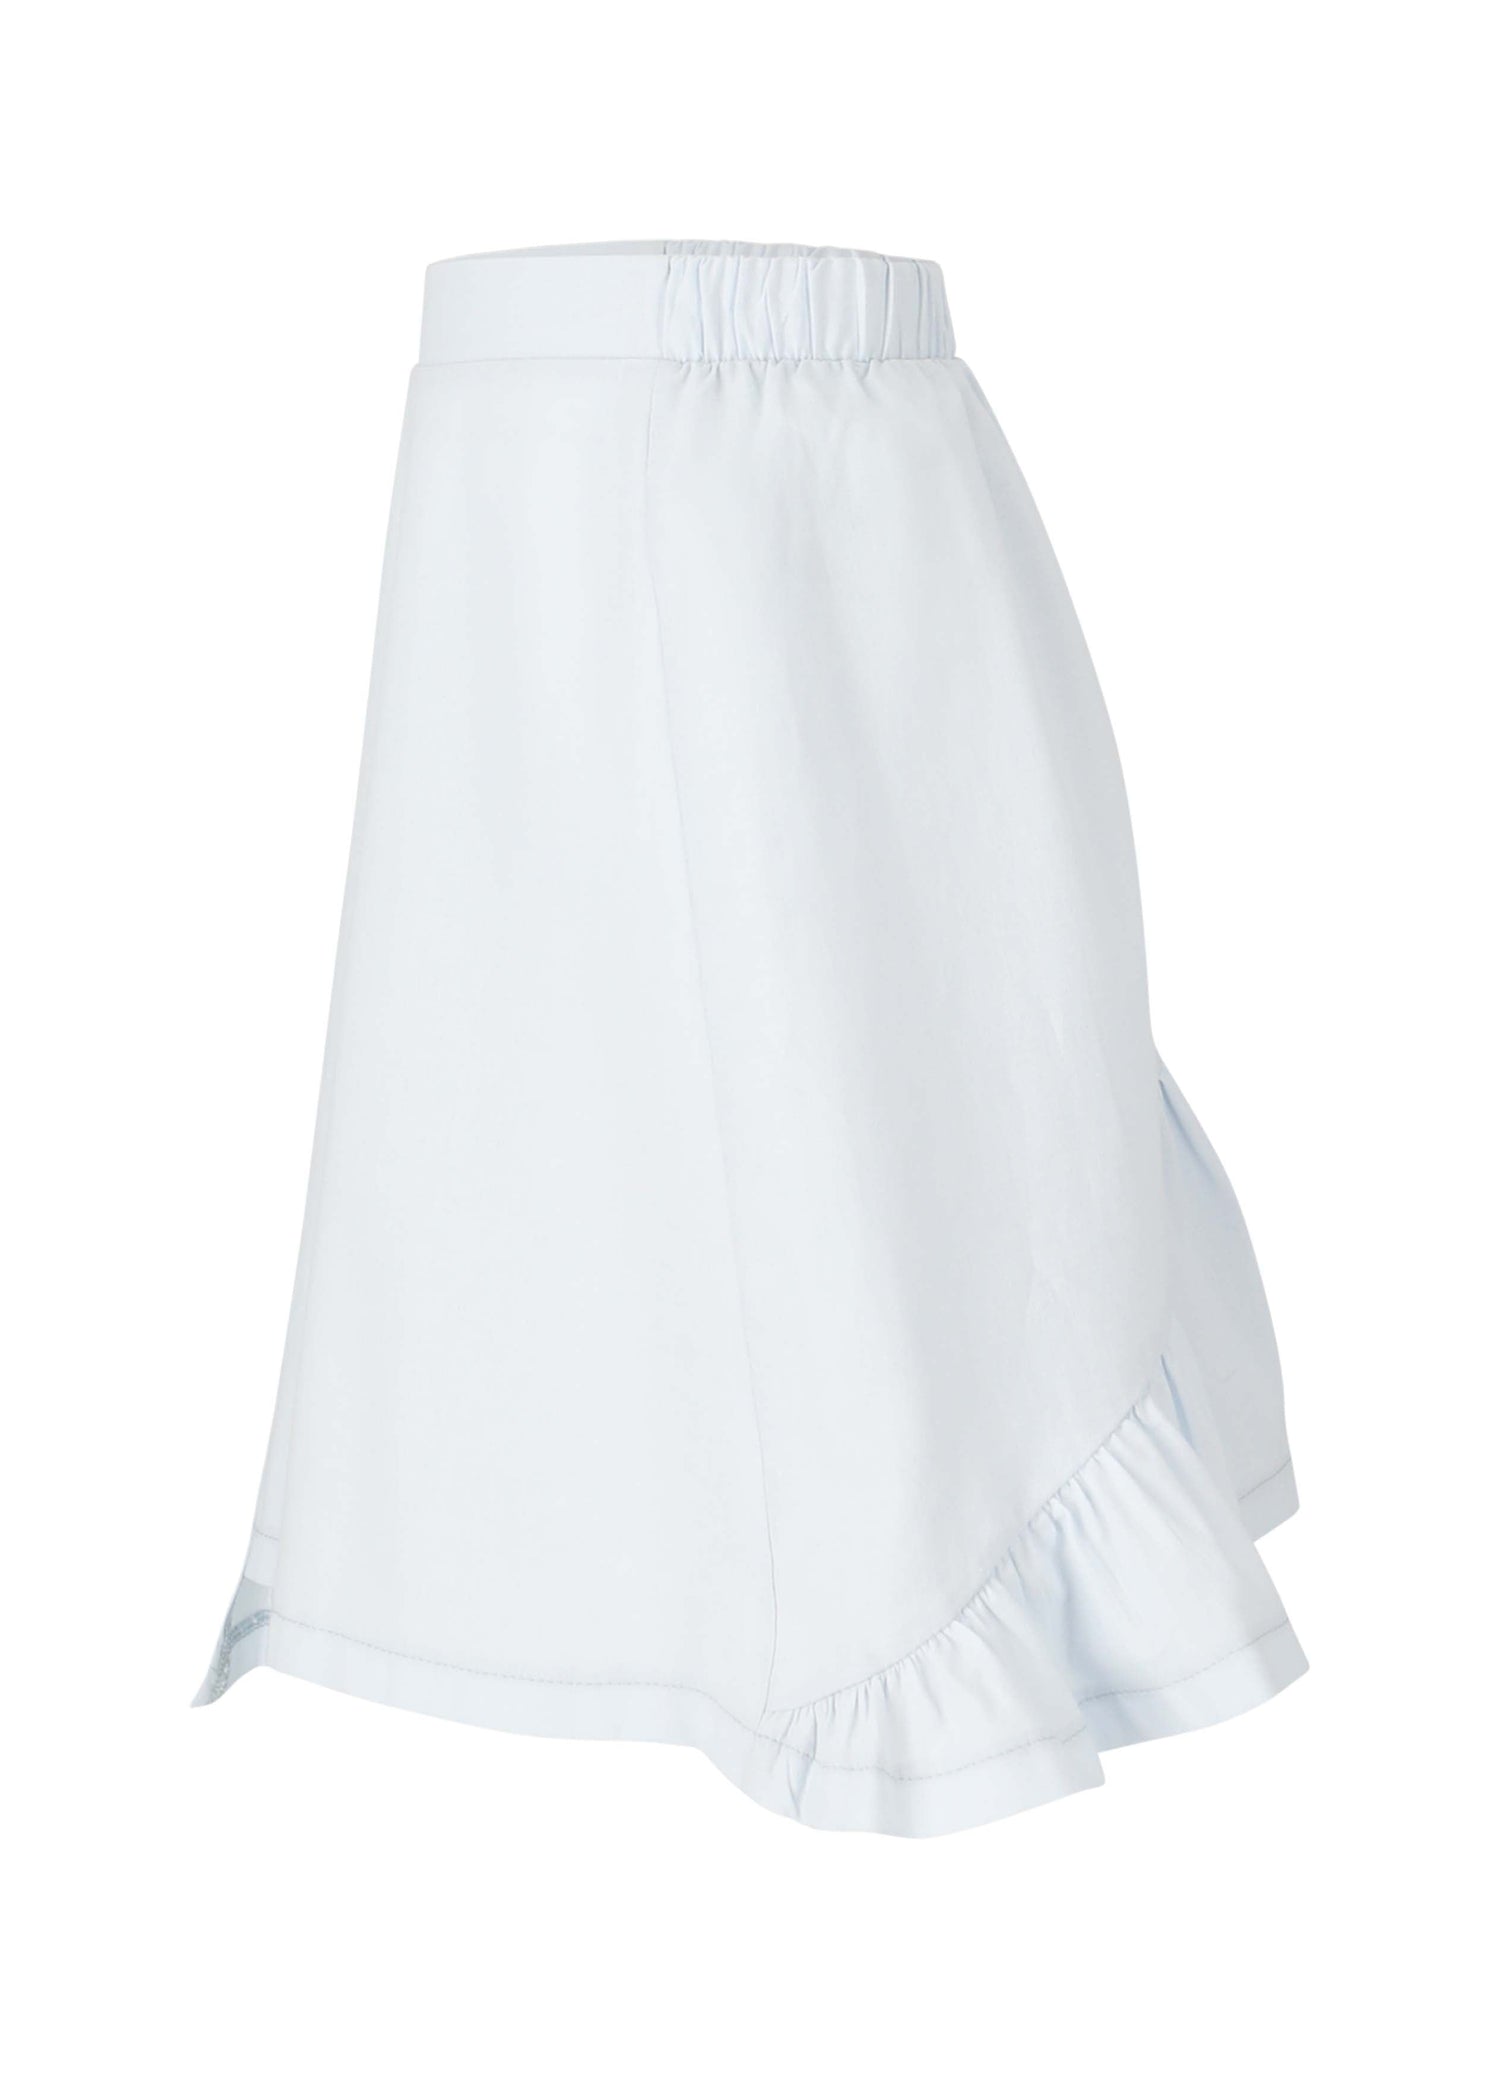 Skirt No. 7 - Celeste Skirts LMN3 